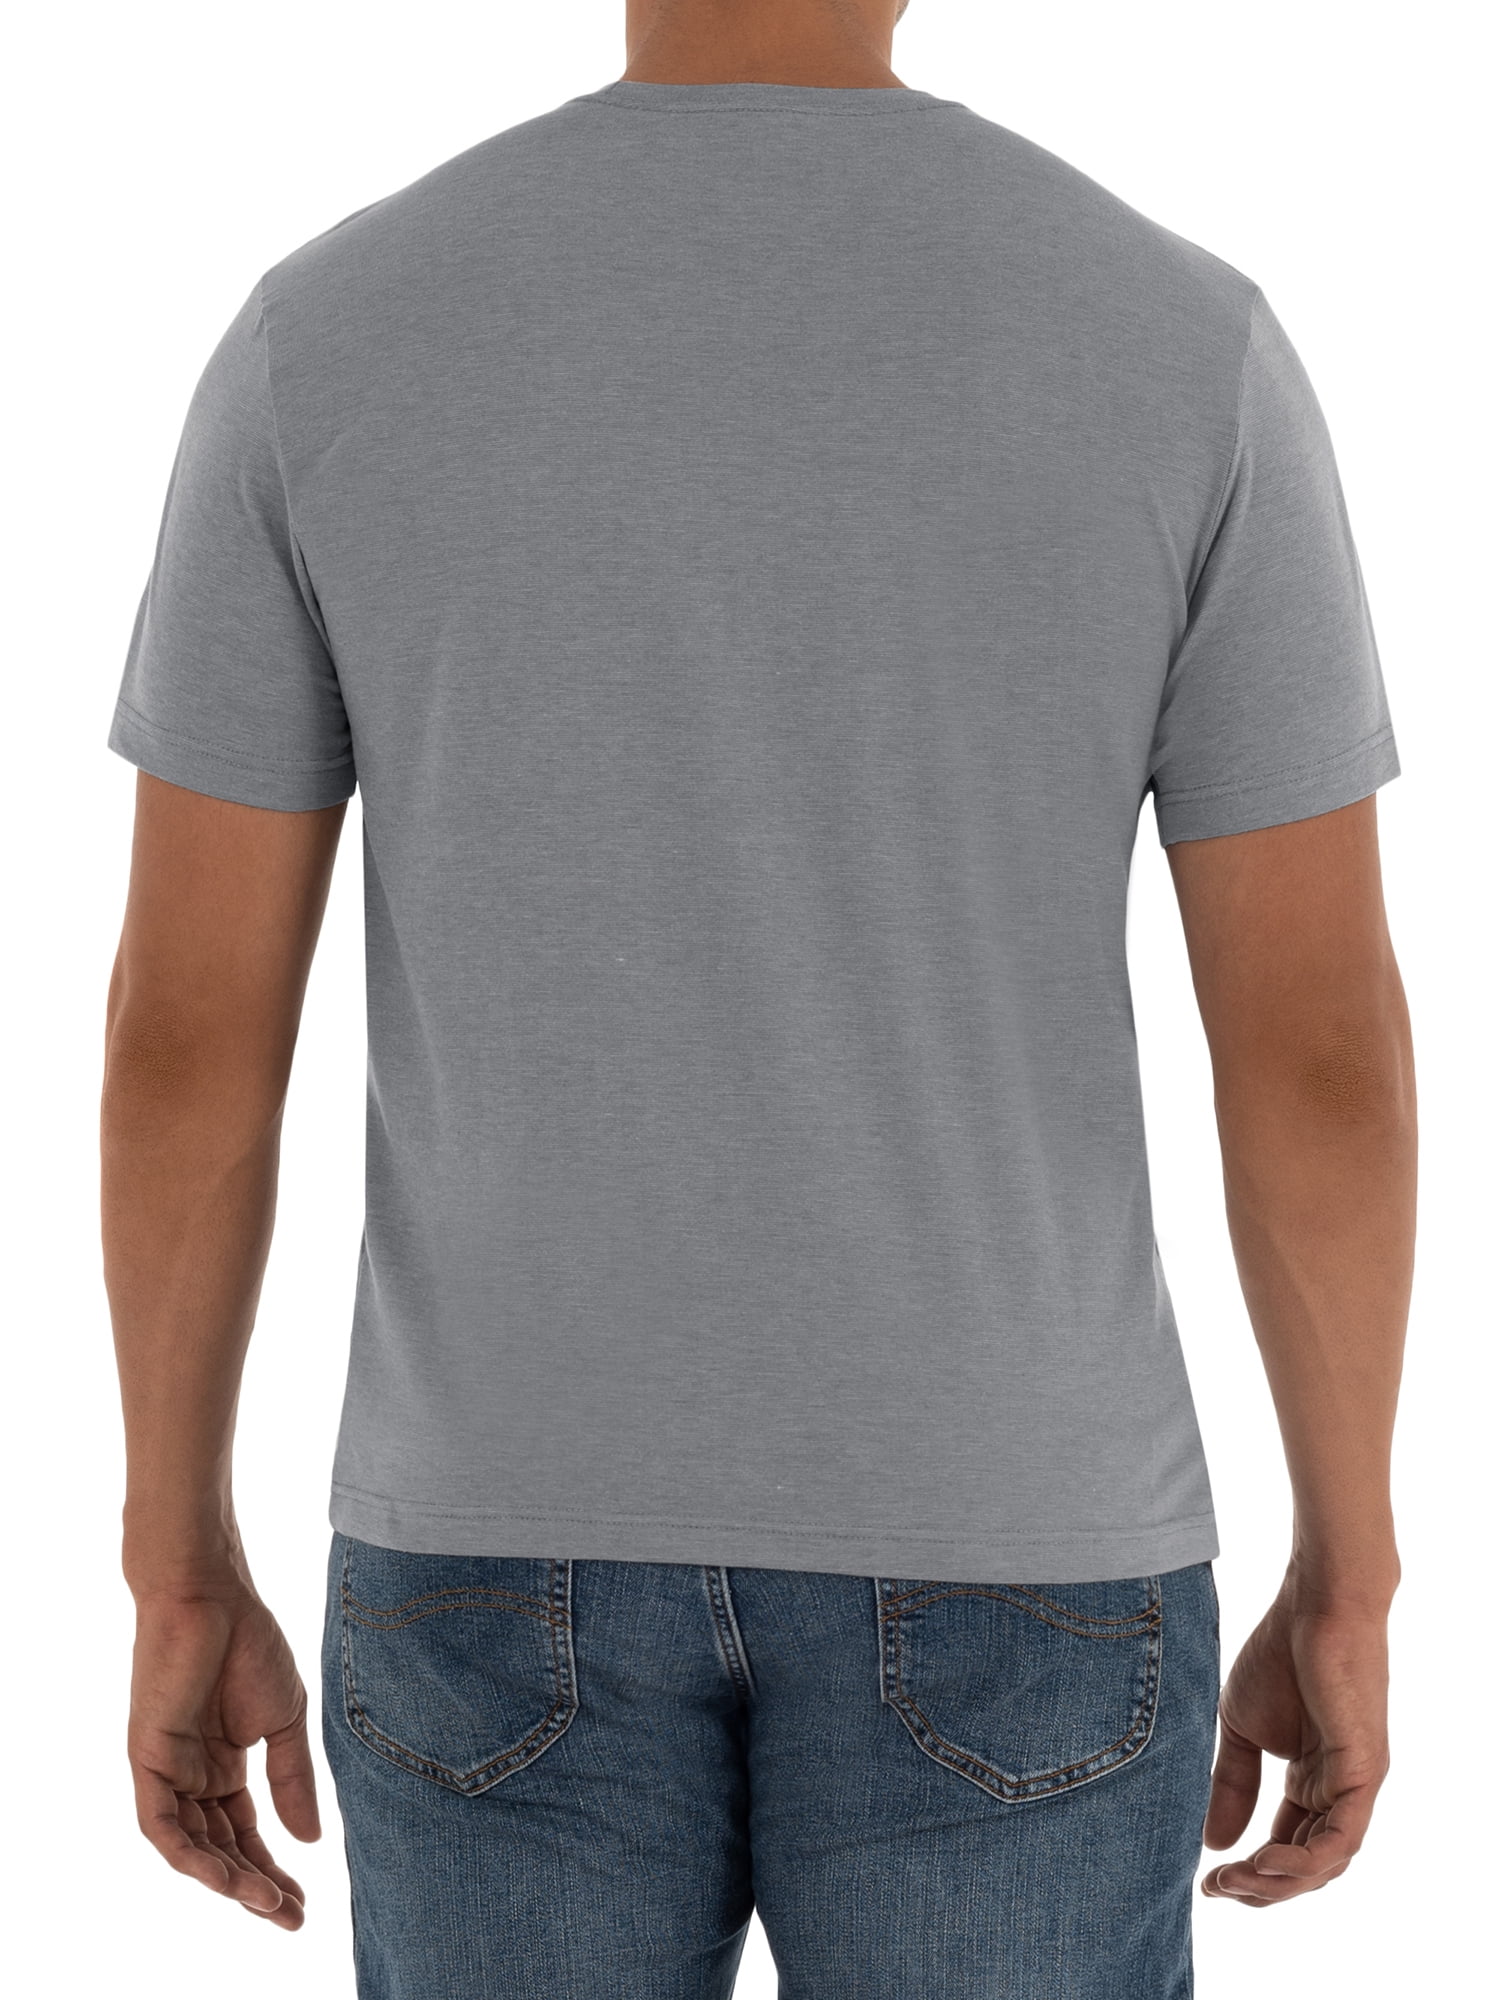 Lee Men's Premium T-Shirt, 2 Pack